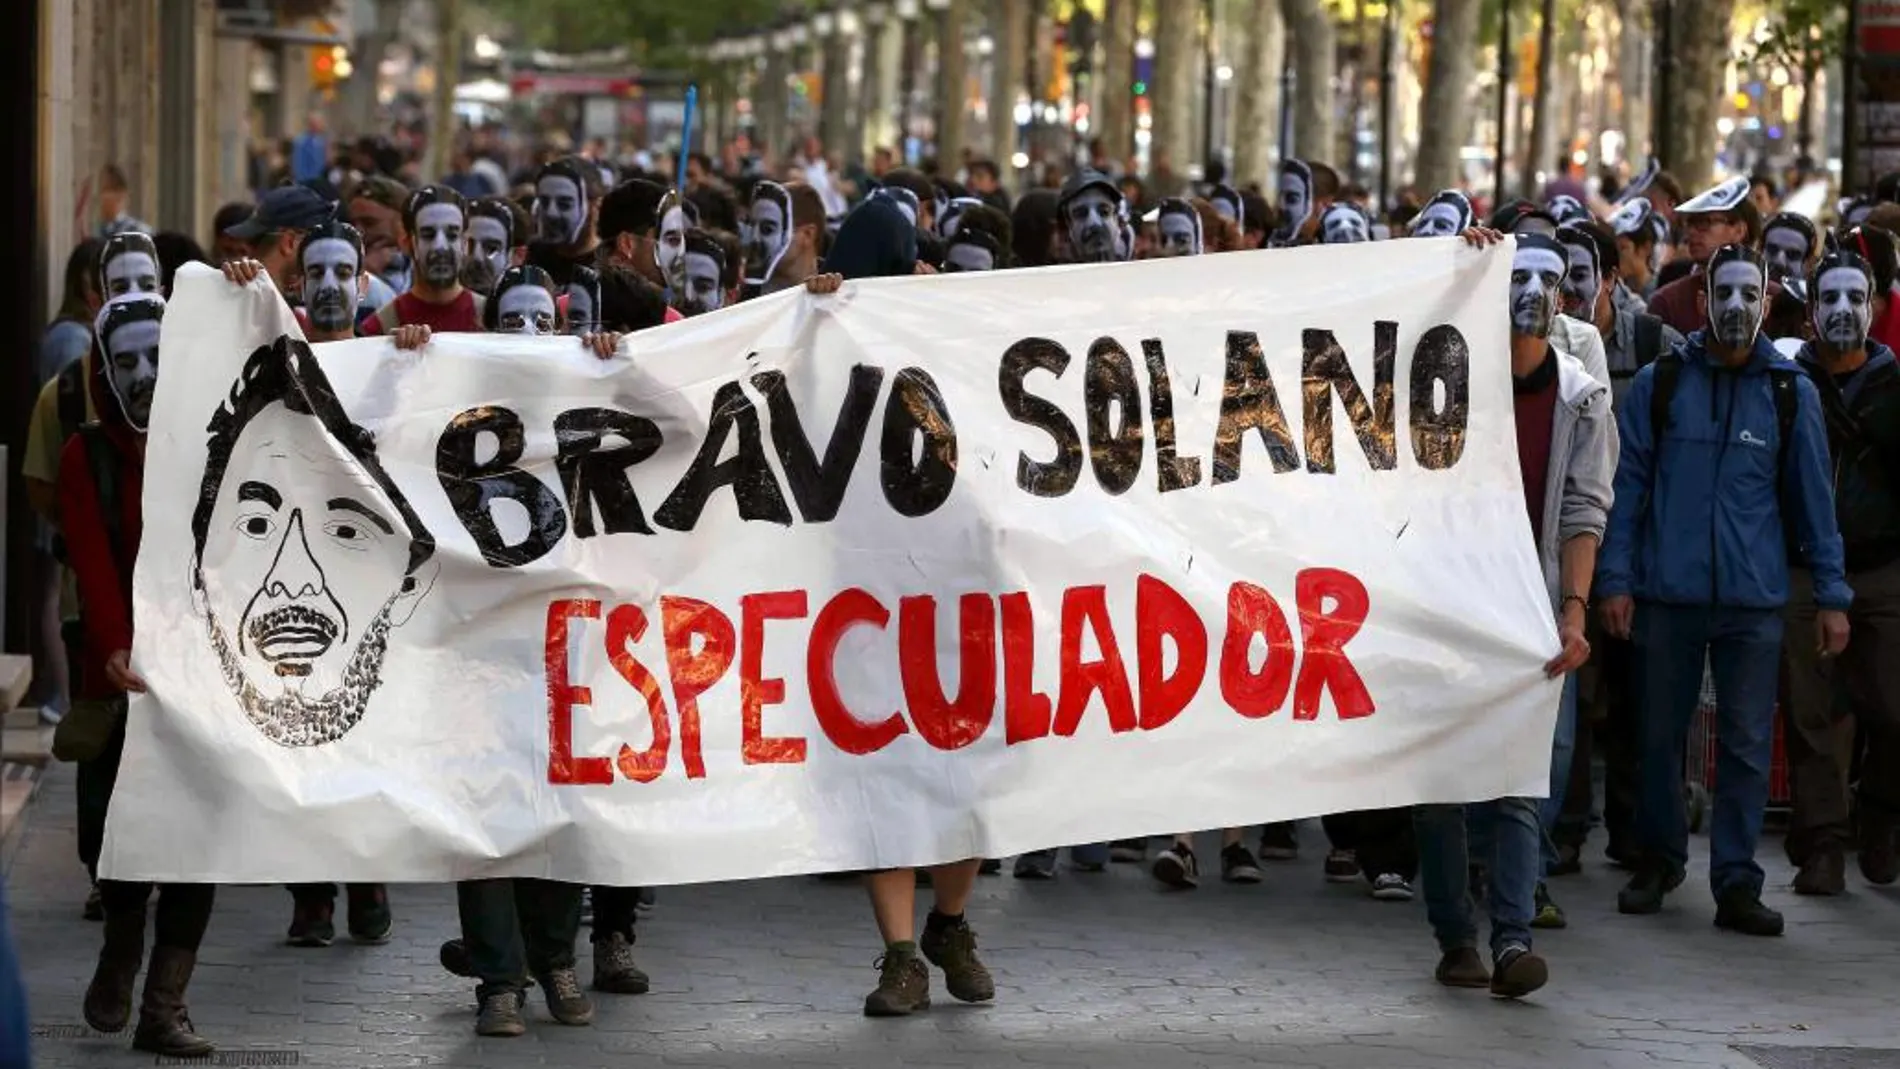 Centenares de personas participaron esta tarde en un escrache contra la propiedad del llamado "banco expropiado", con caretas de uno de los propietarios, Manuel Bravo Solano